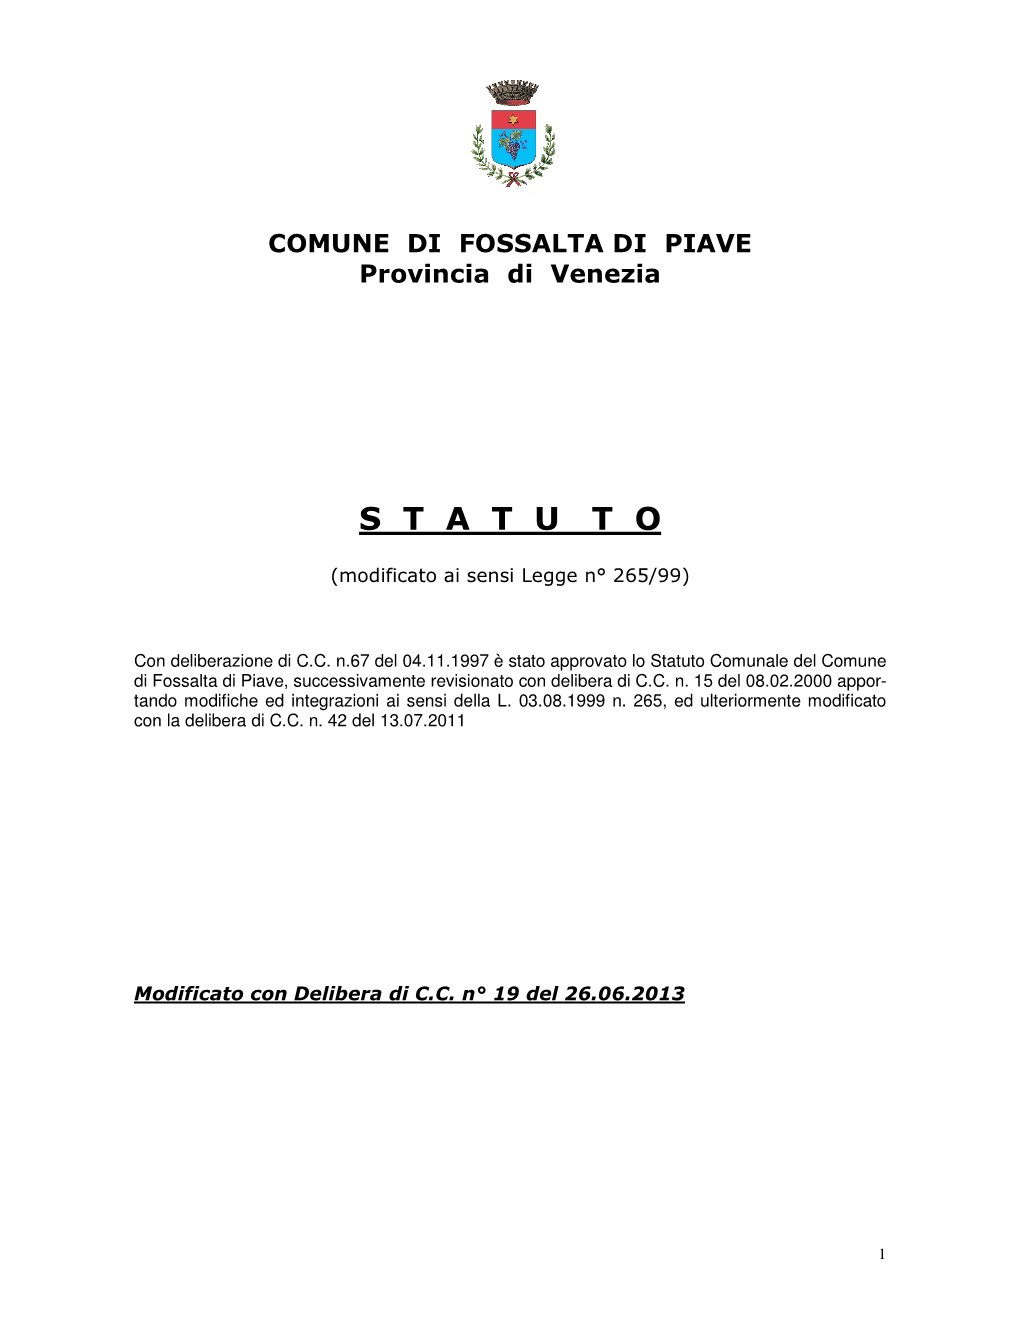 Statuto Comunale Del Comune Di Fossalta Di Piave, Successivamente Revisionato Con Delibera Di C.C